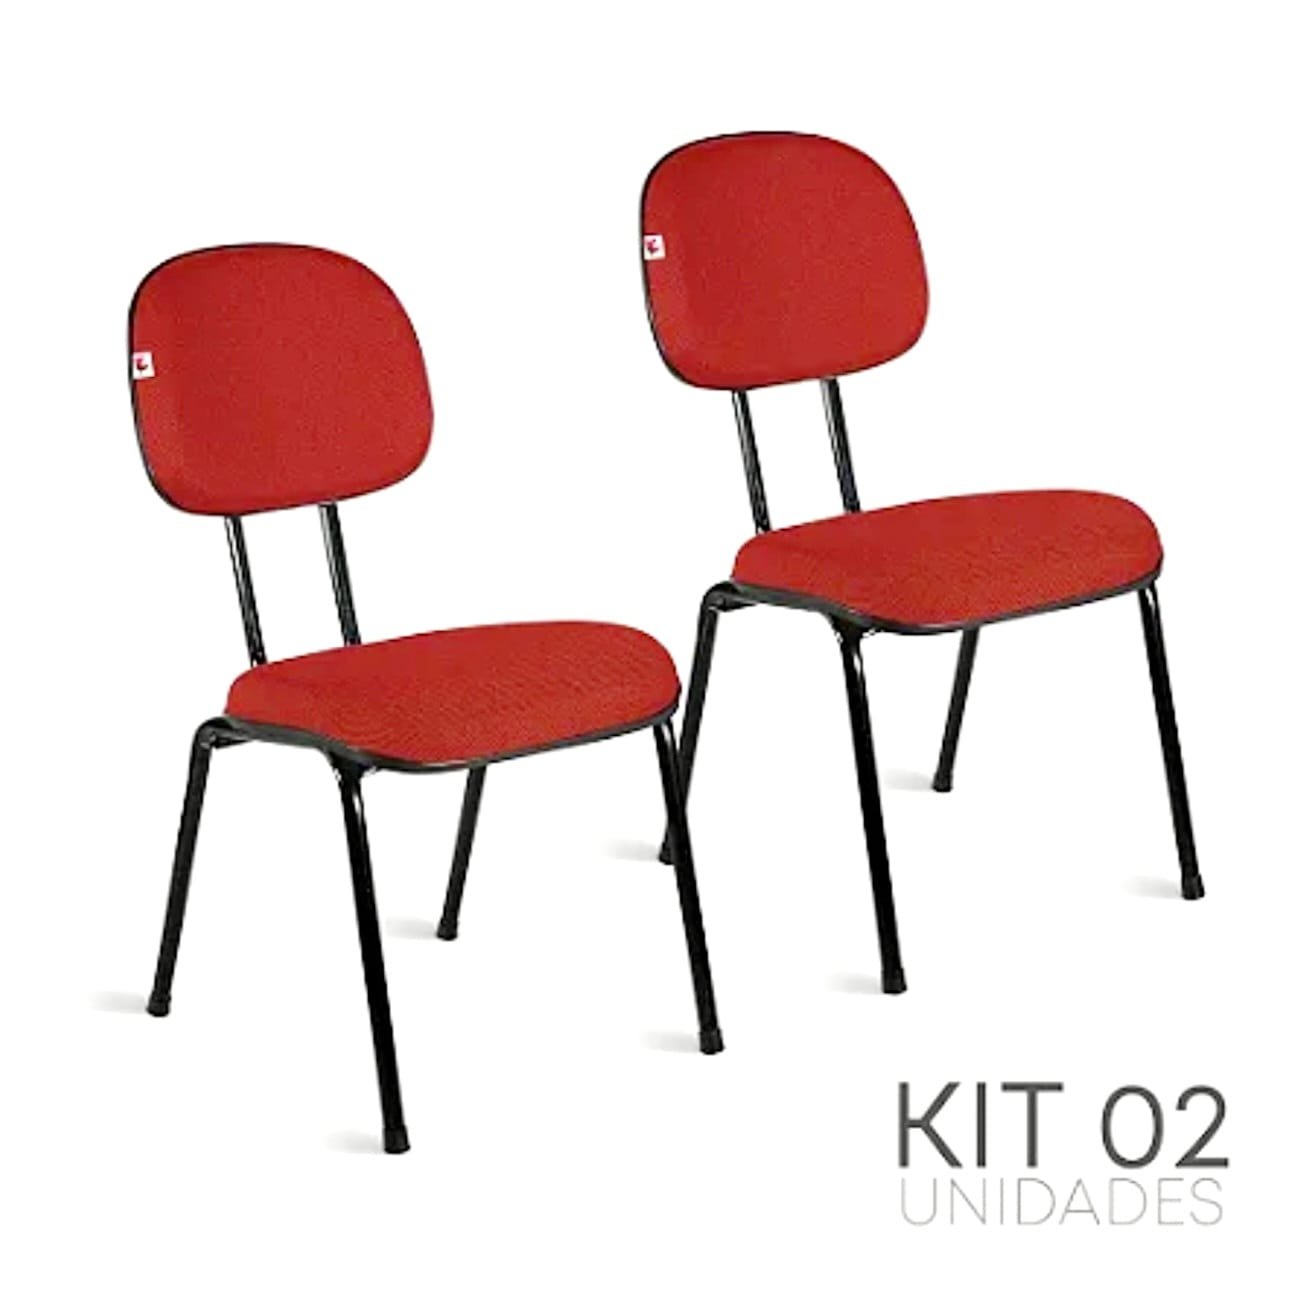 Kit Cjs 02 Cadeiras Secretária Palito Desmontavel Vermelha